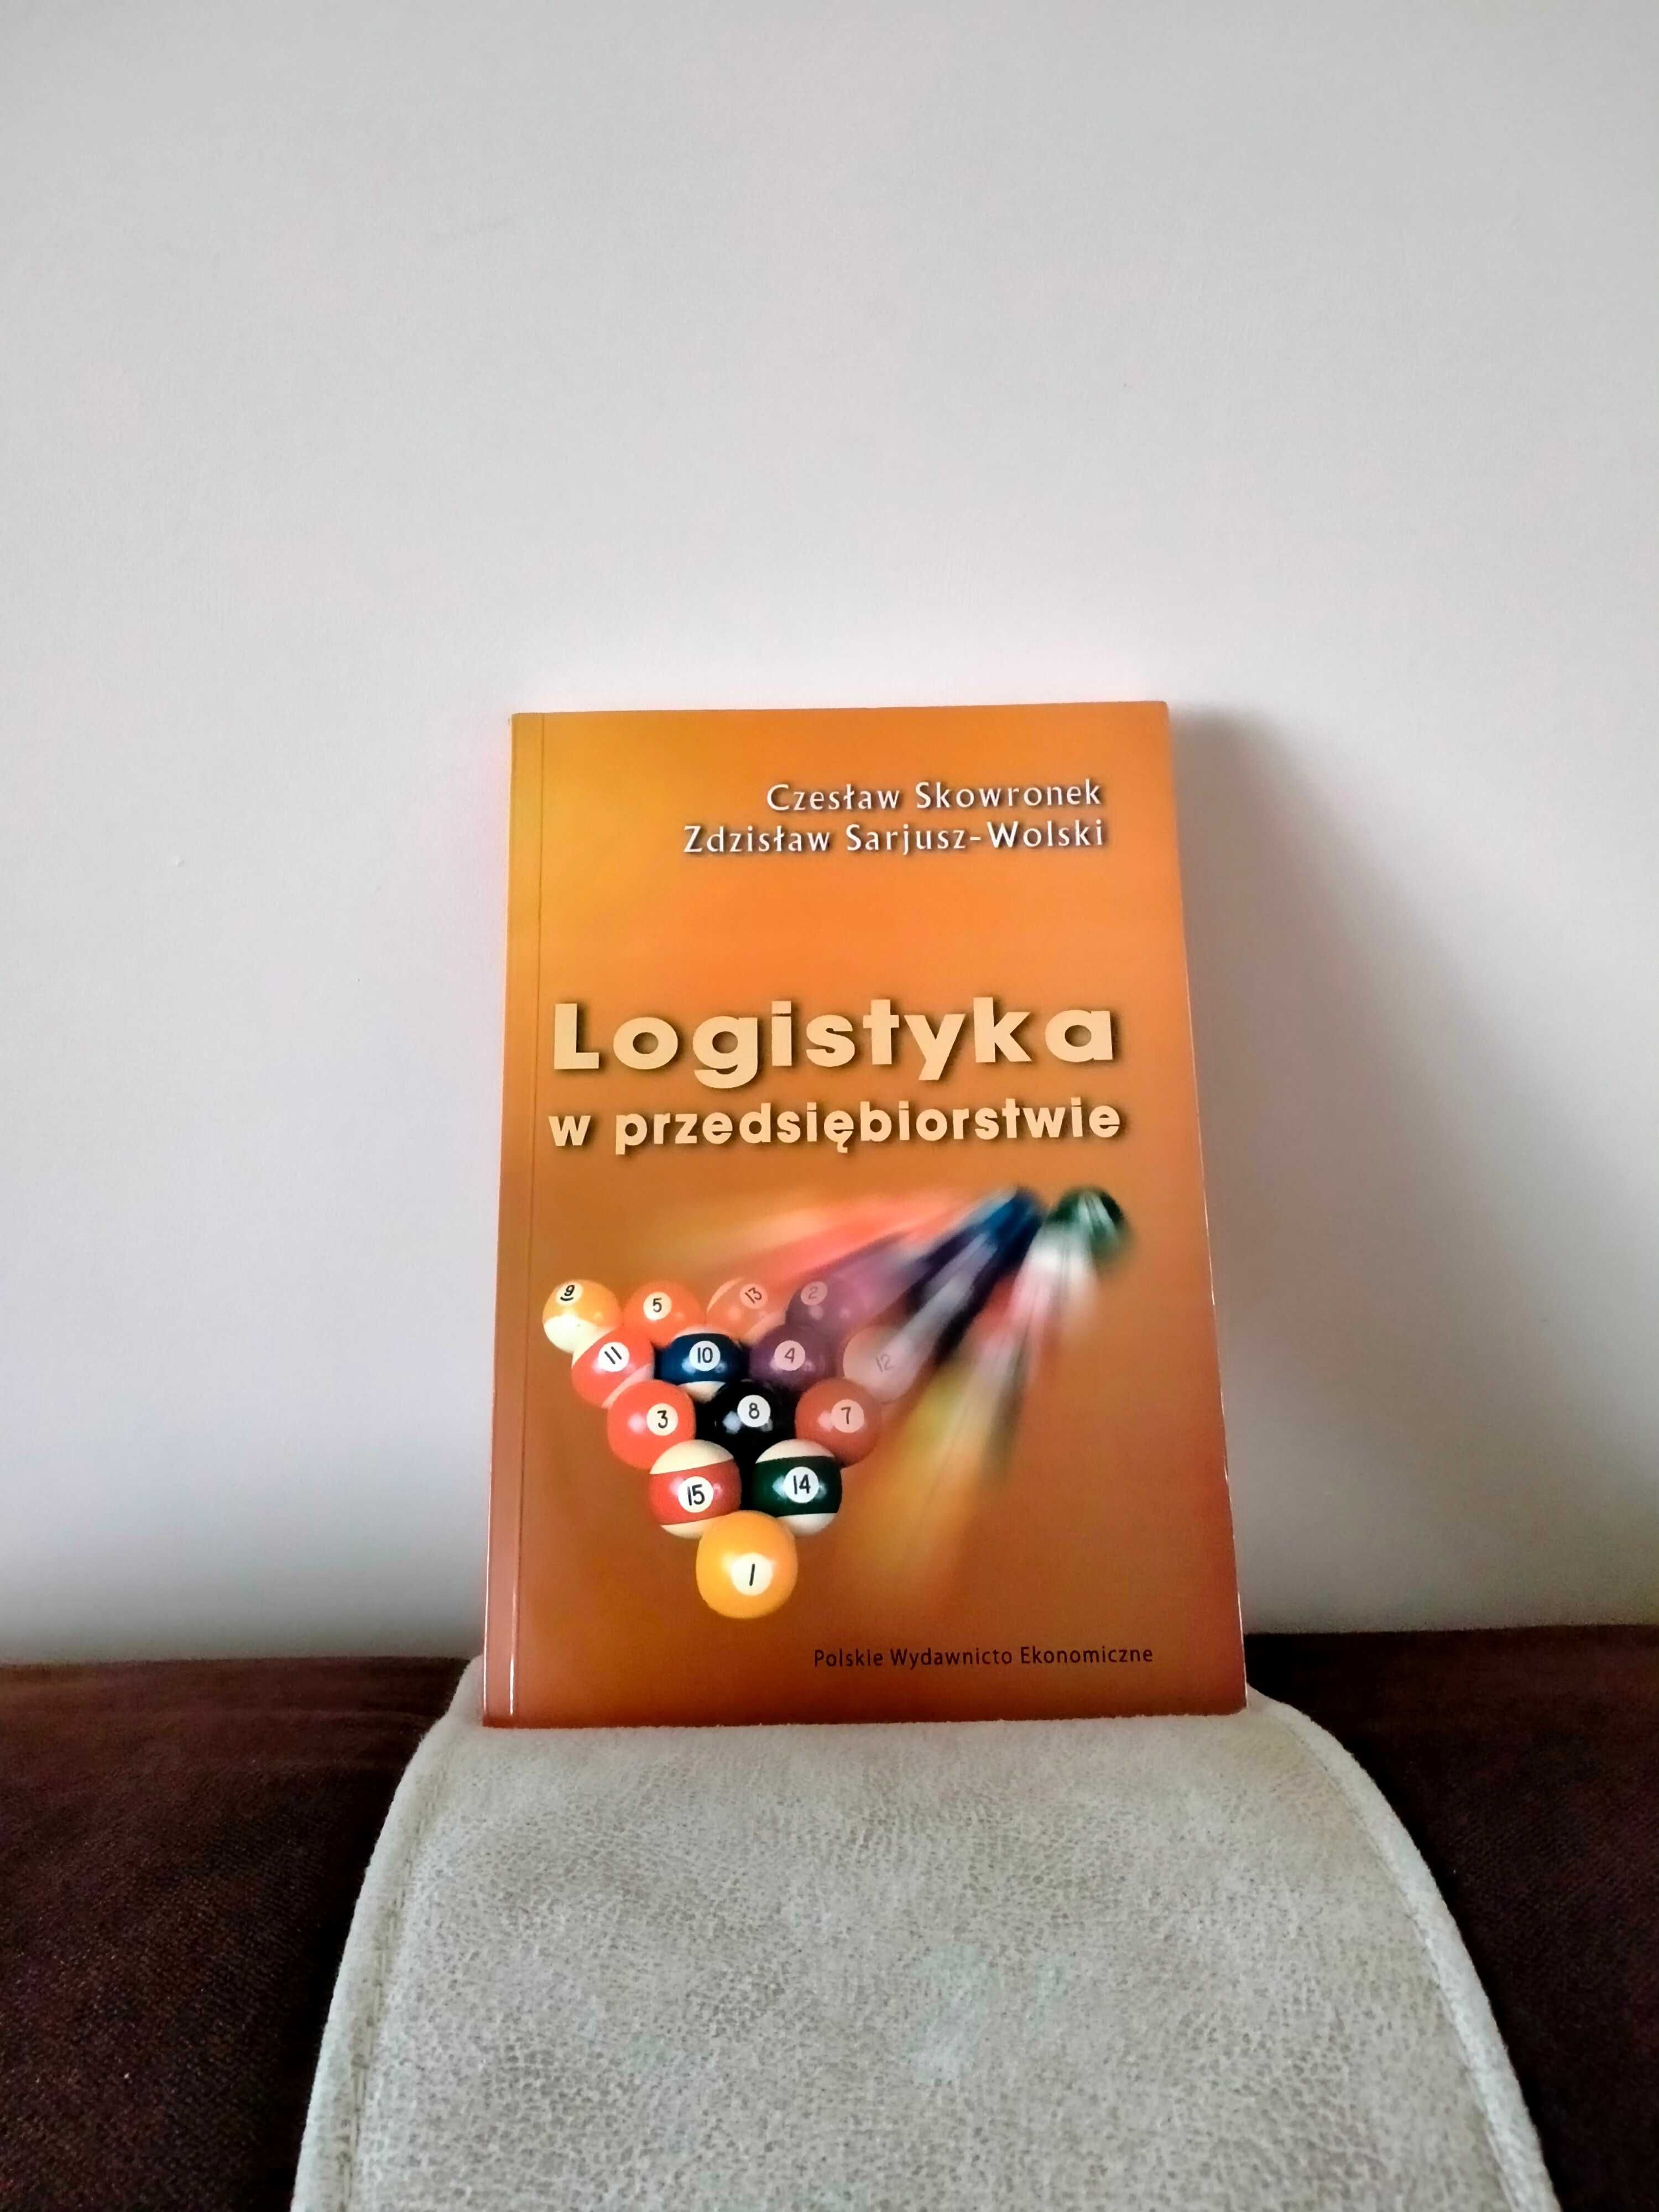 "Logistyka w przedsiębiorstwie" Z.Sarjusz - Wolski, Cz. Skowronek